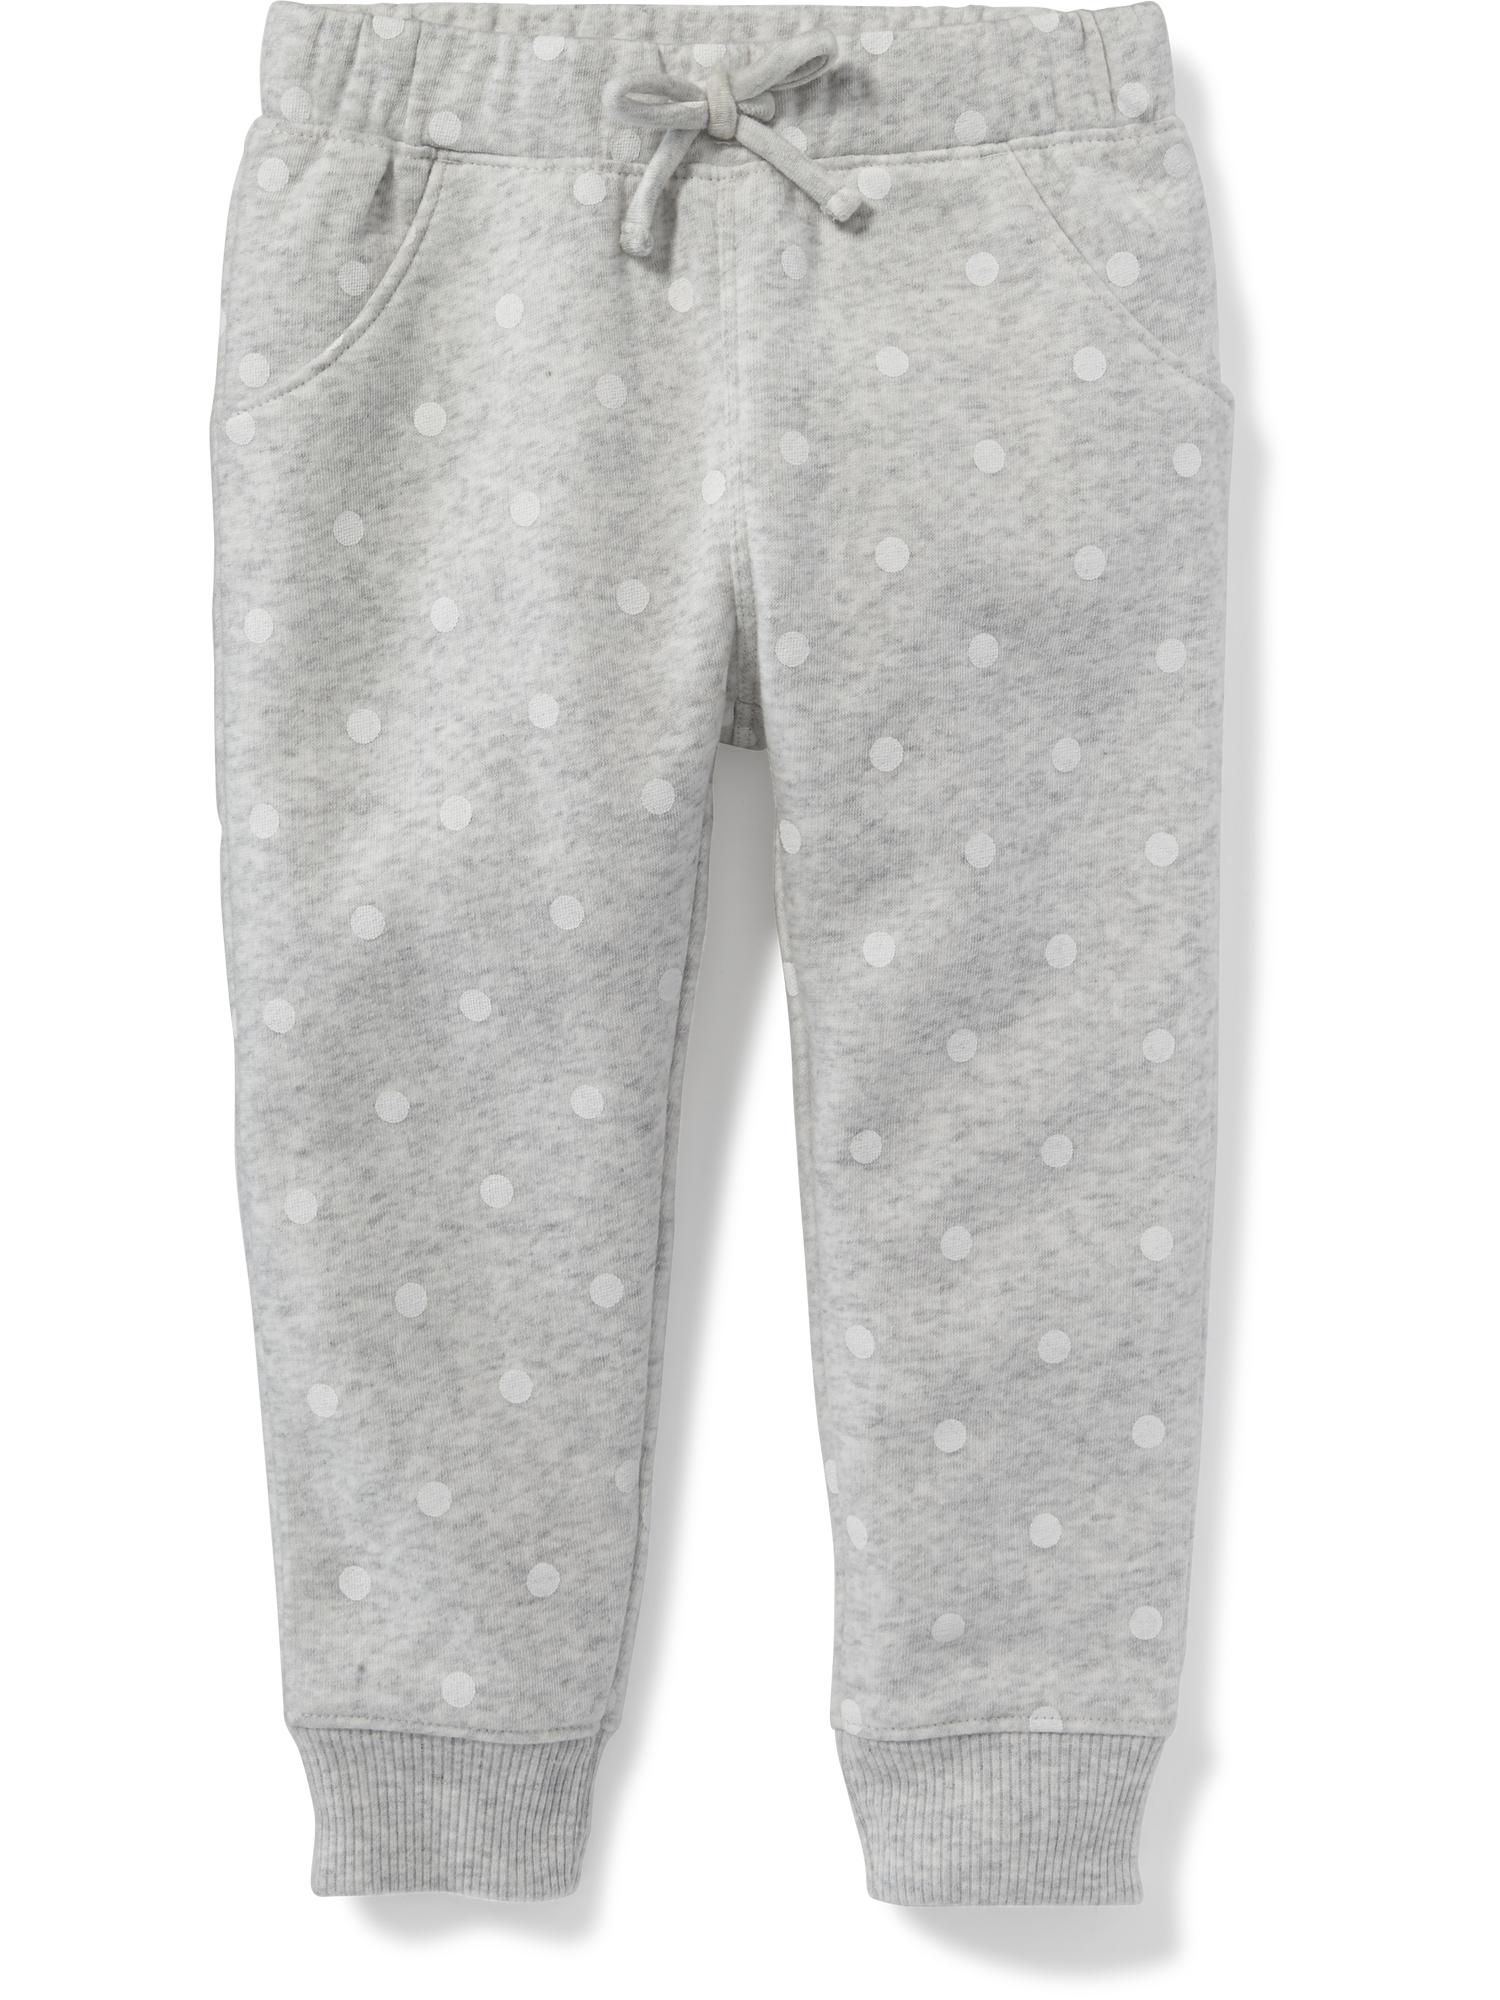 Grey Pull-On Polka Dot Fleece Pants